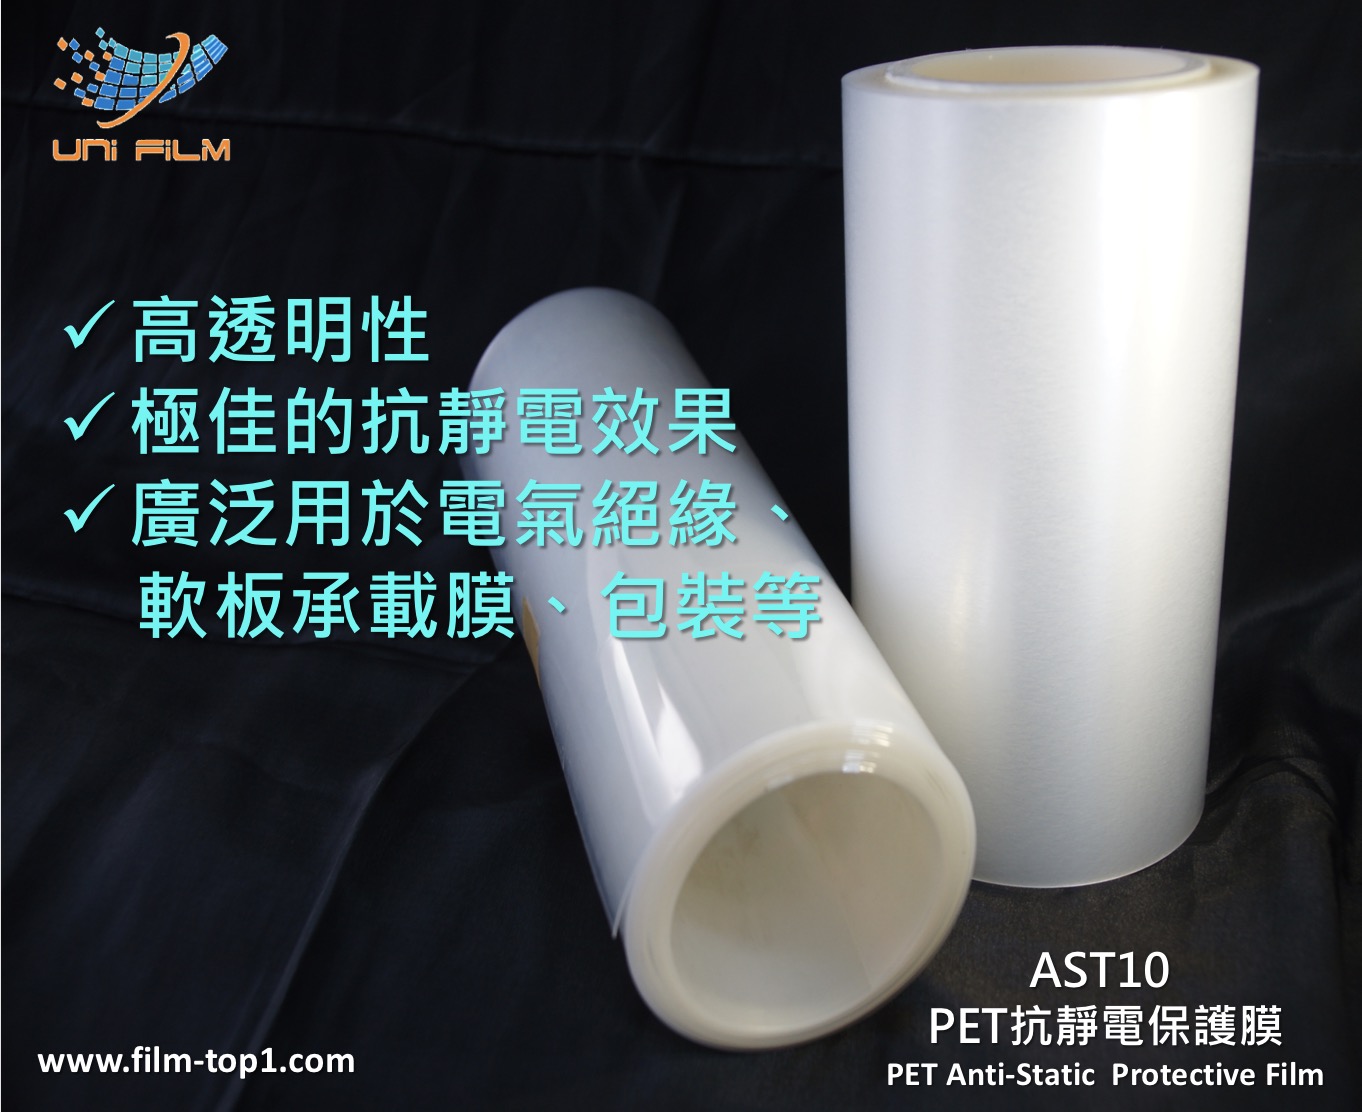 AST10 PET抗靜電保護膜